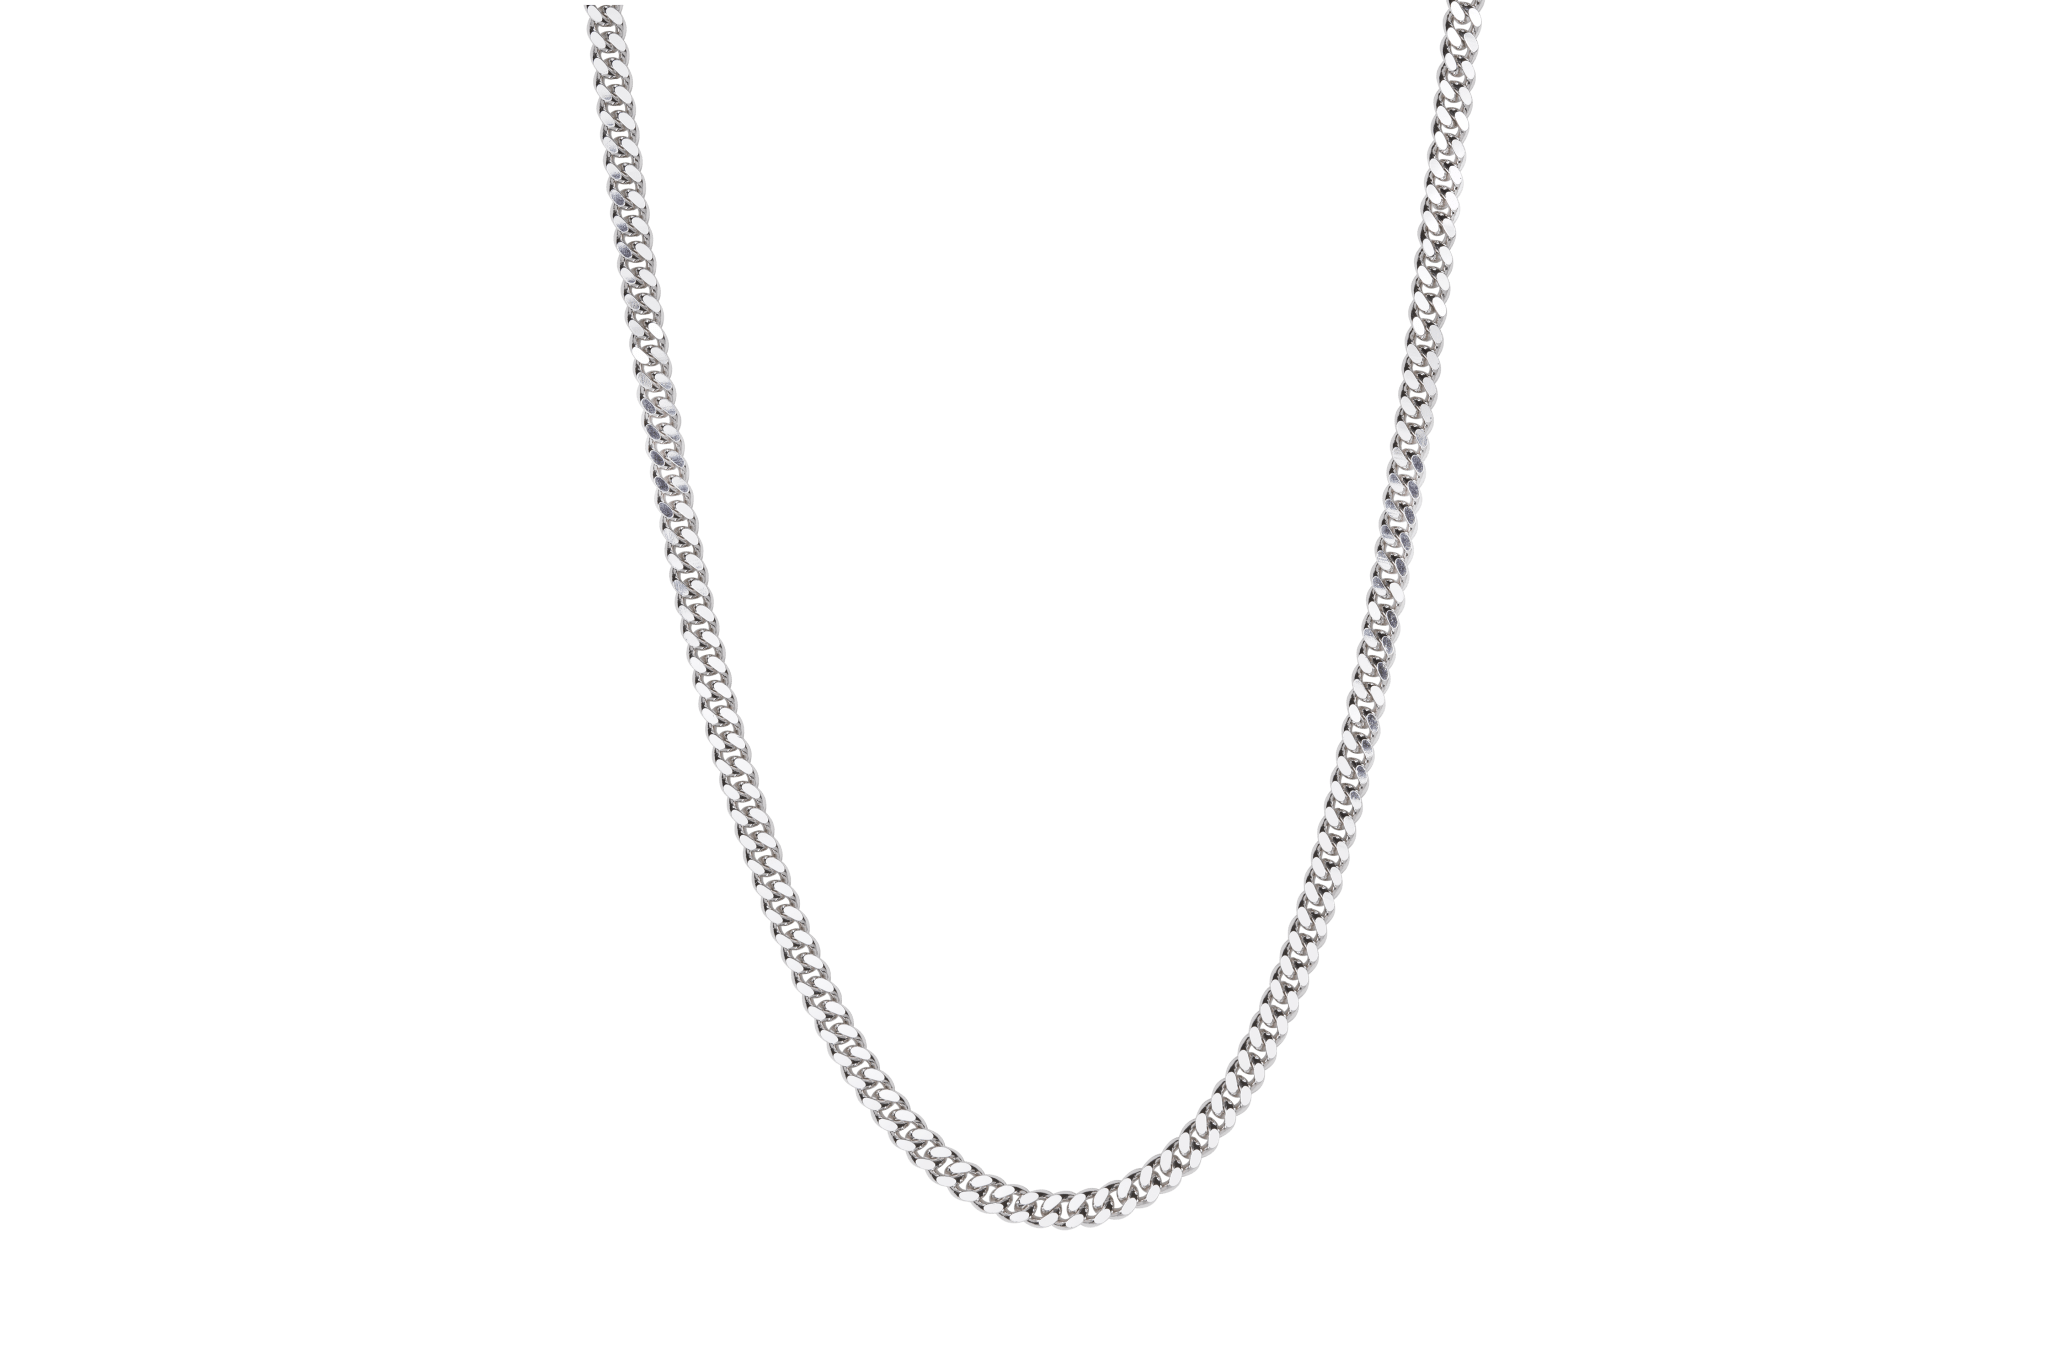 IX Curb Chain Silver